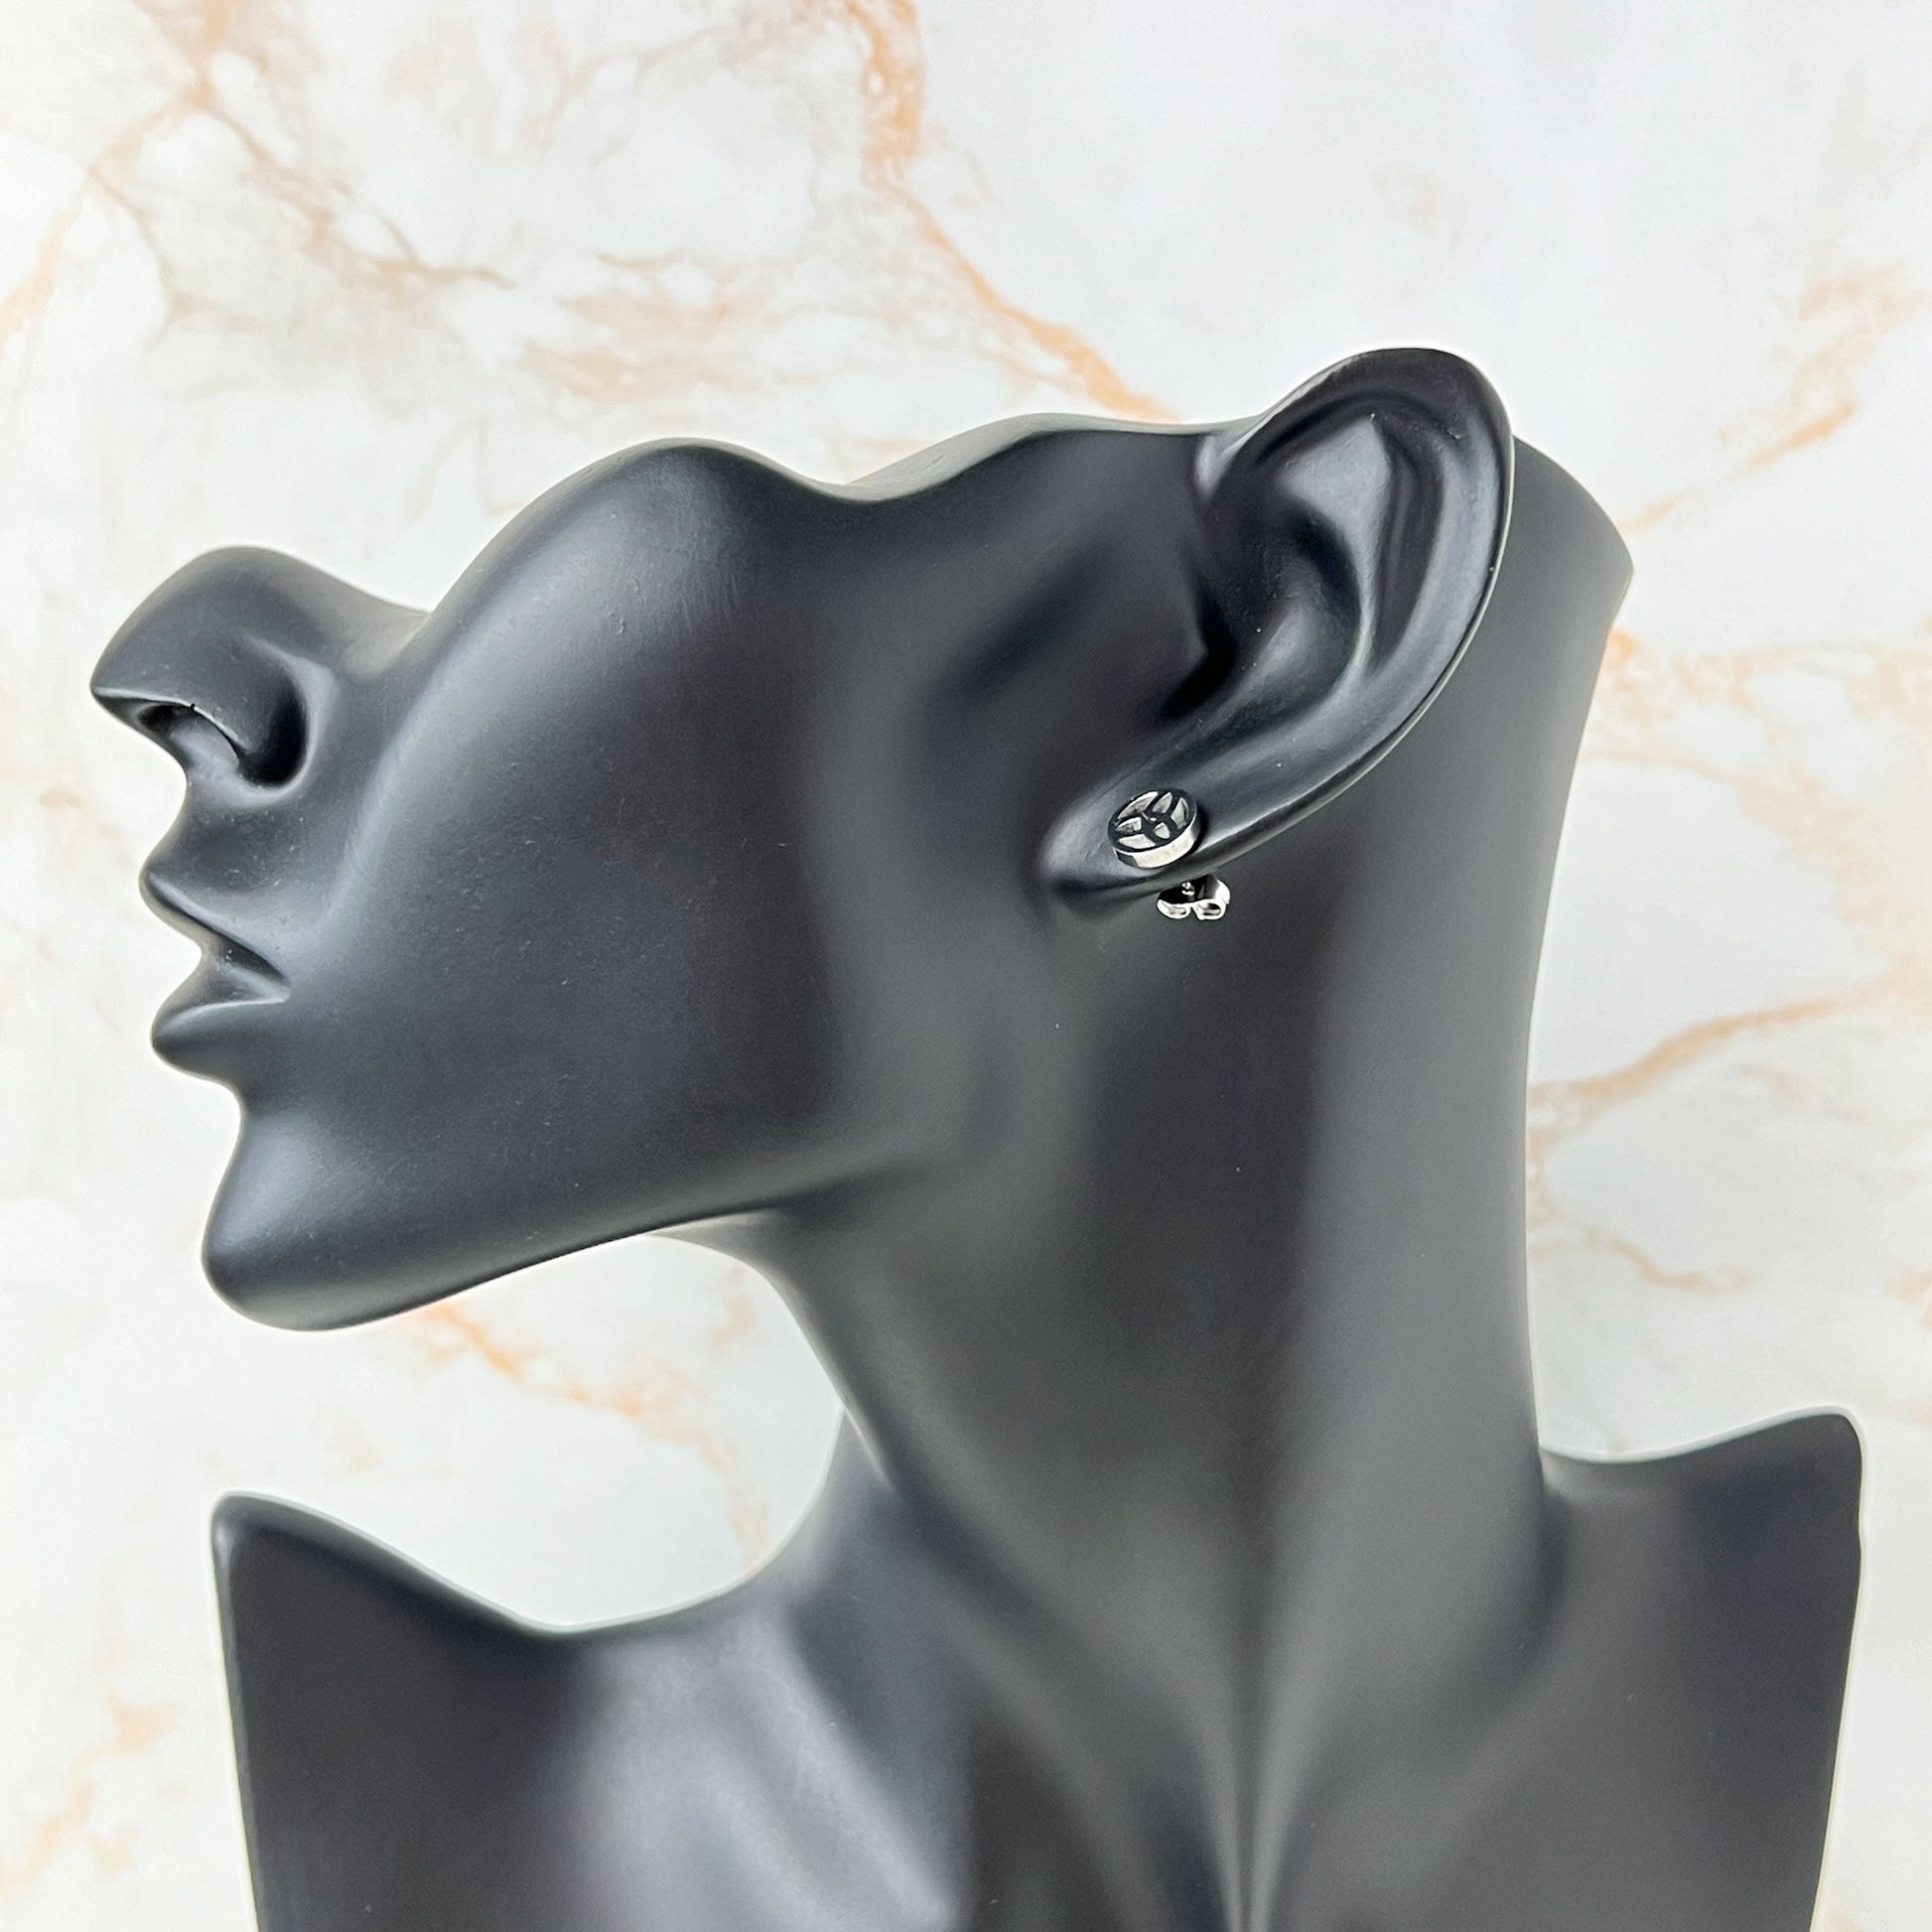 Celtic stud earrings, Triskel or Triquetra Baguette Magick